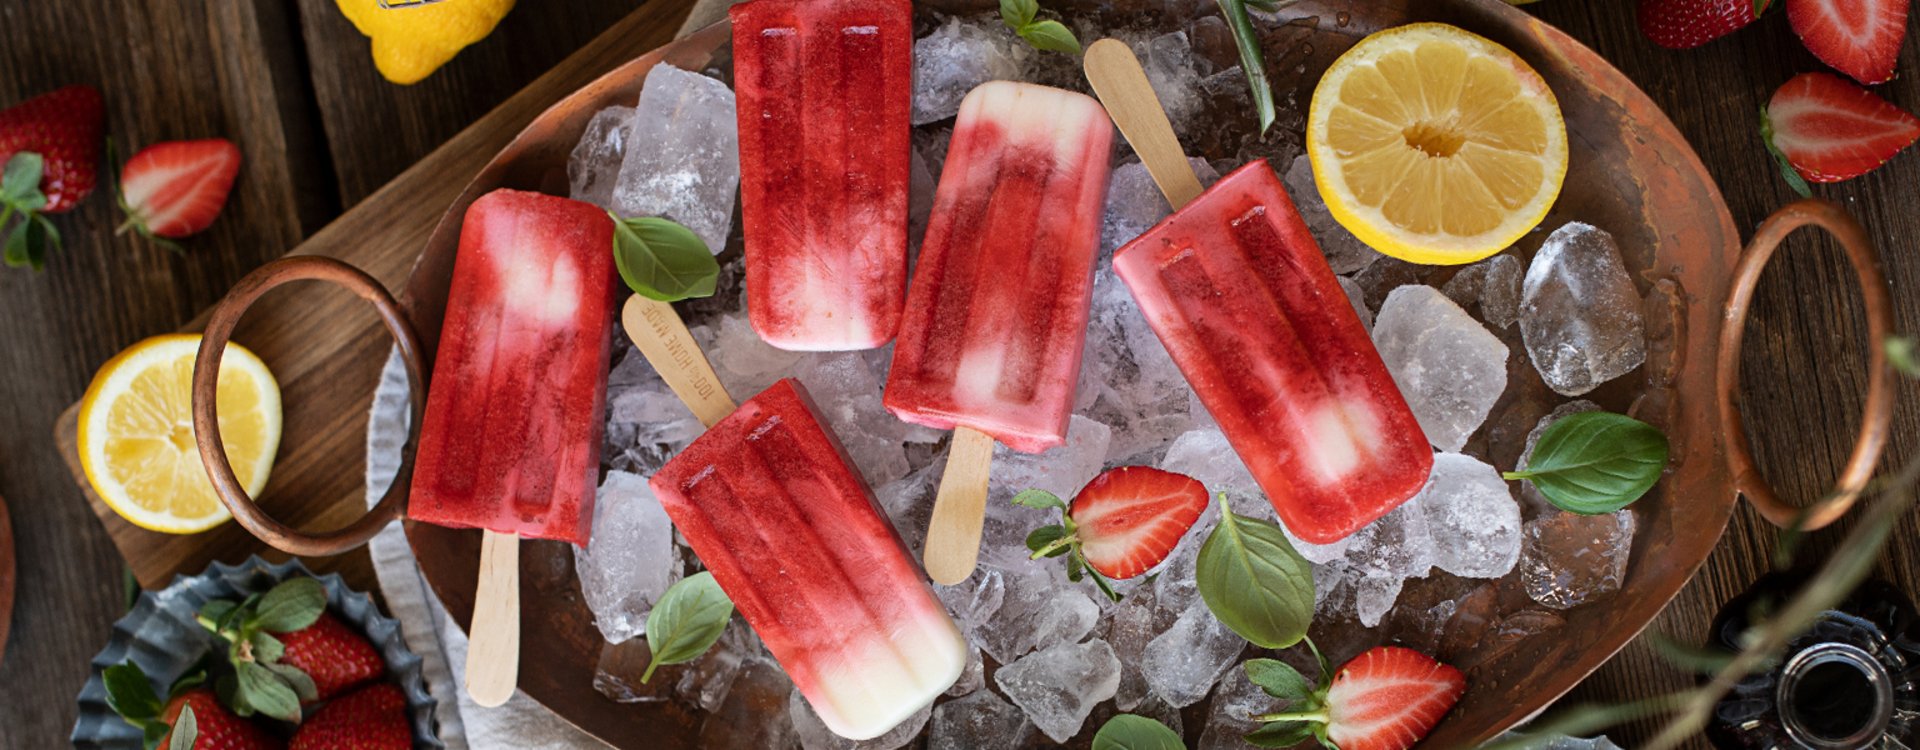 Erdbeer-Balsamico-Popsicles mit Joghurt